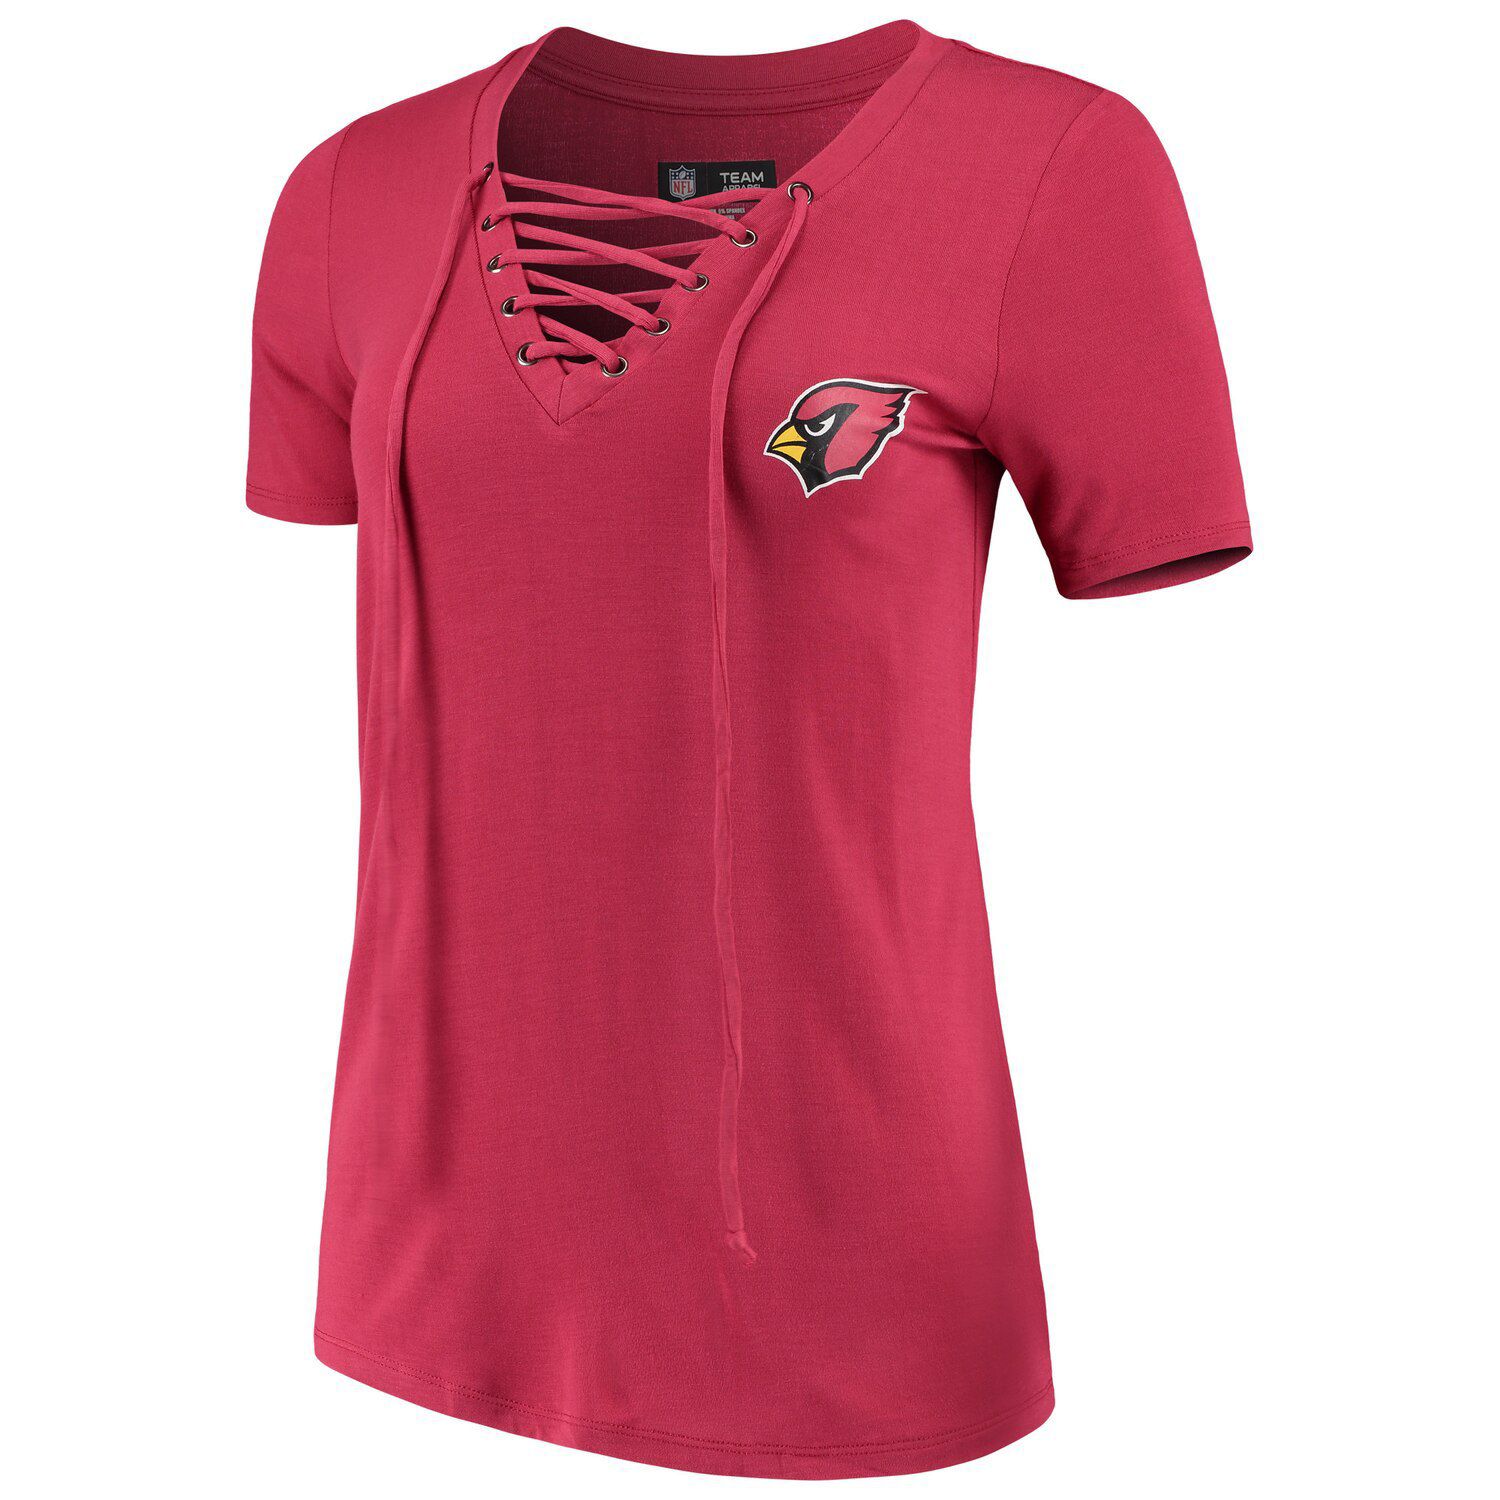 womens arizona cardinals shirt